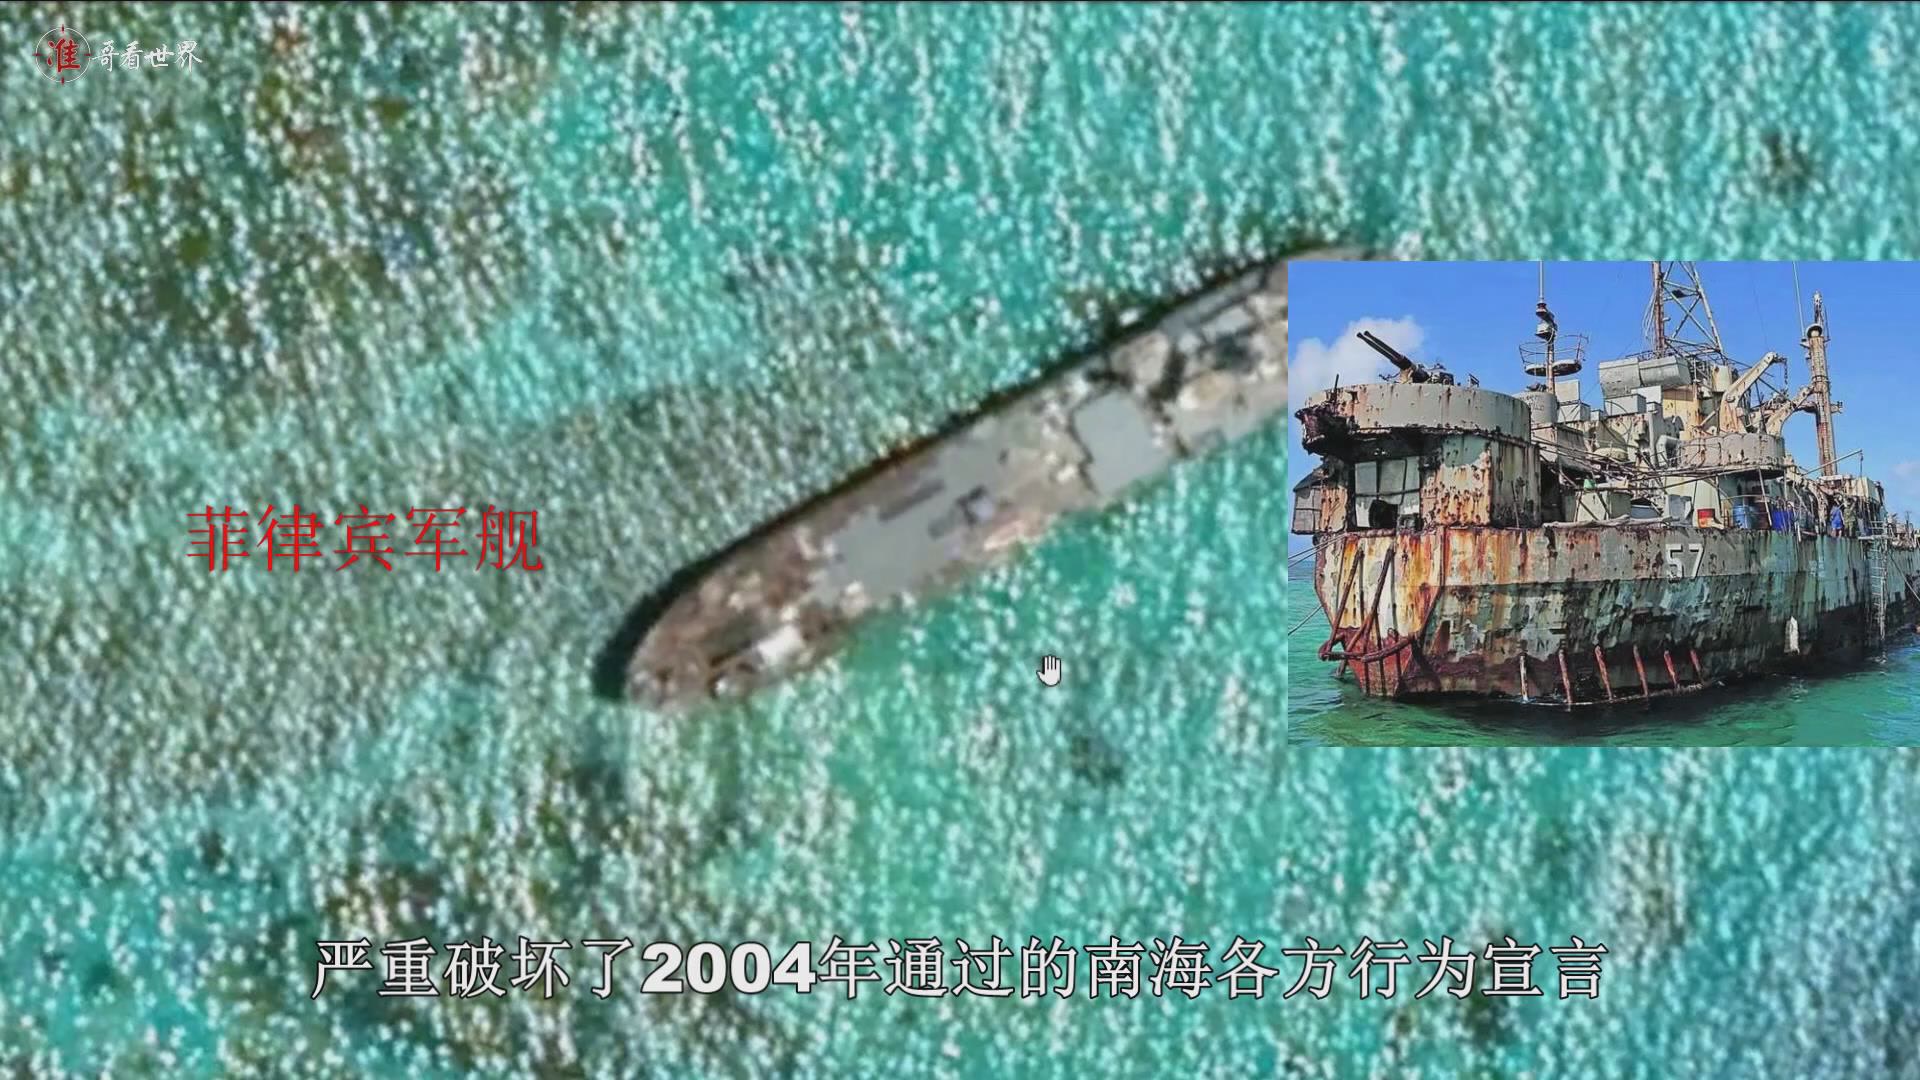 21年前菲律宾军舰赖在仁爱礁上多年不撤，这条船什么来头 - 哔哩哔哩